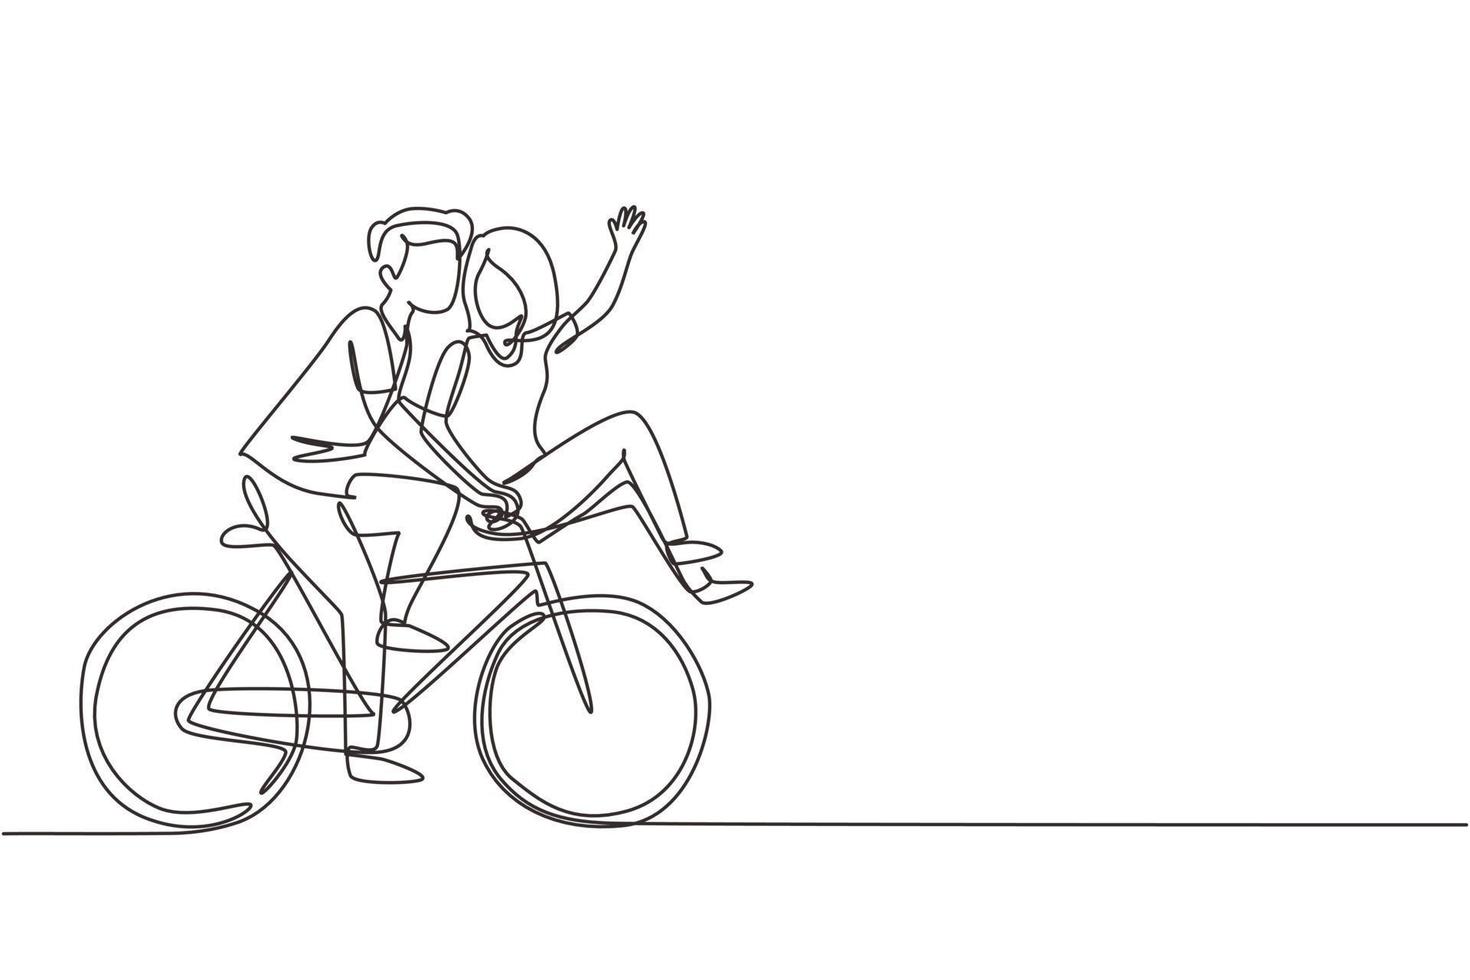 único desenho de uma linha casal romântico fofo no encontro andando de bicicleta. jovem e mulher apaixonada. casal feliz pedalando juntos. ilustração em vetor gráfico de desenho de linha contínua moderna